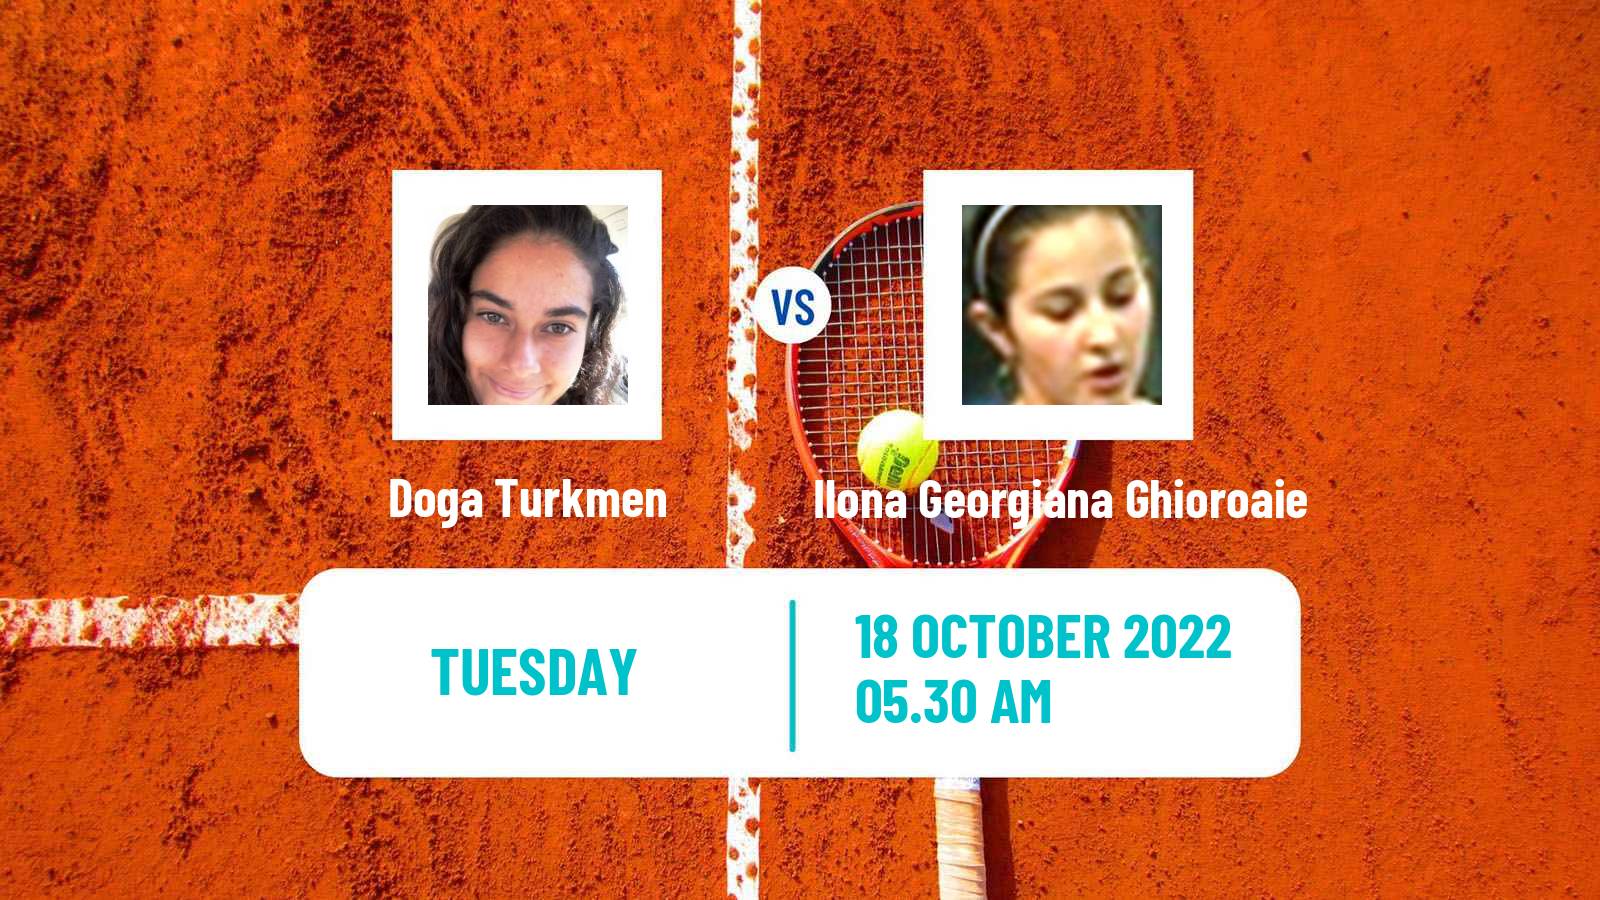 Tennis ITF Tournaments Doga Turkmen - Ilona Georgiana Ghioroaie